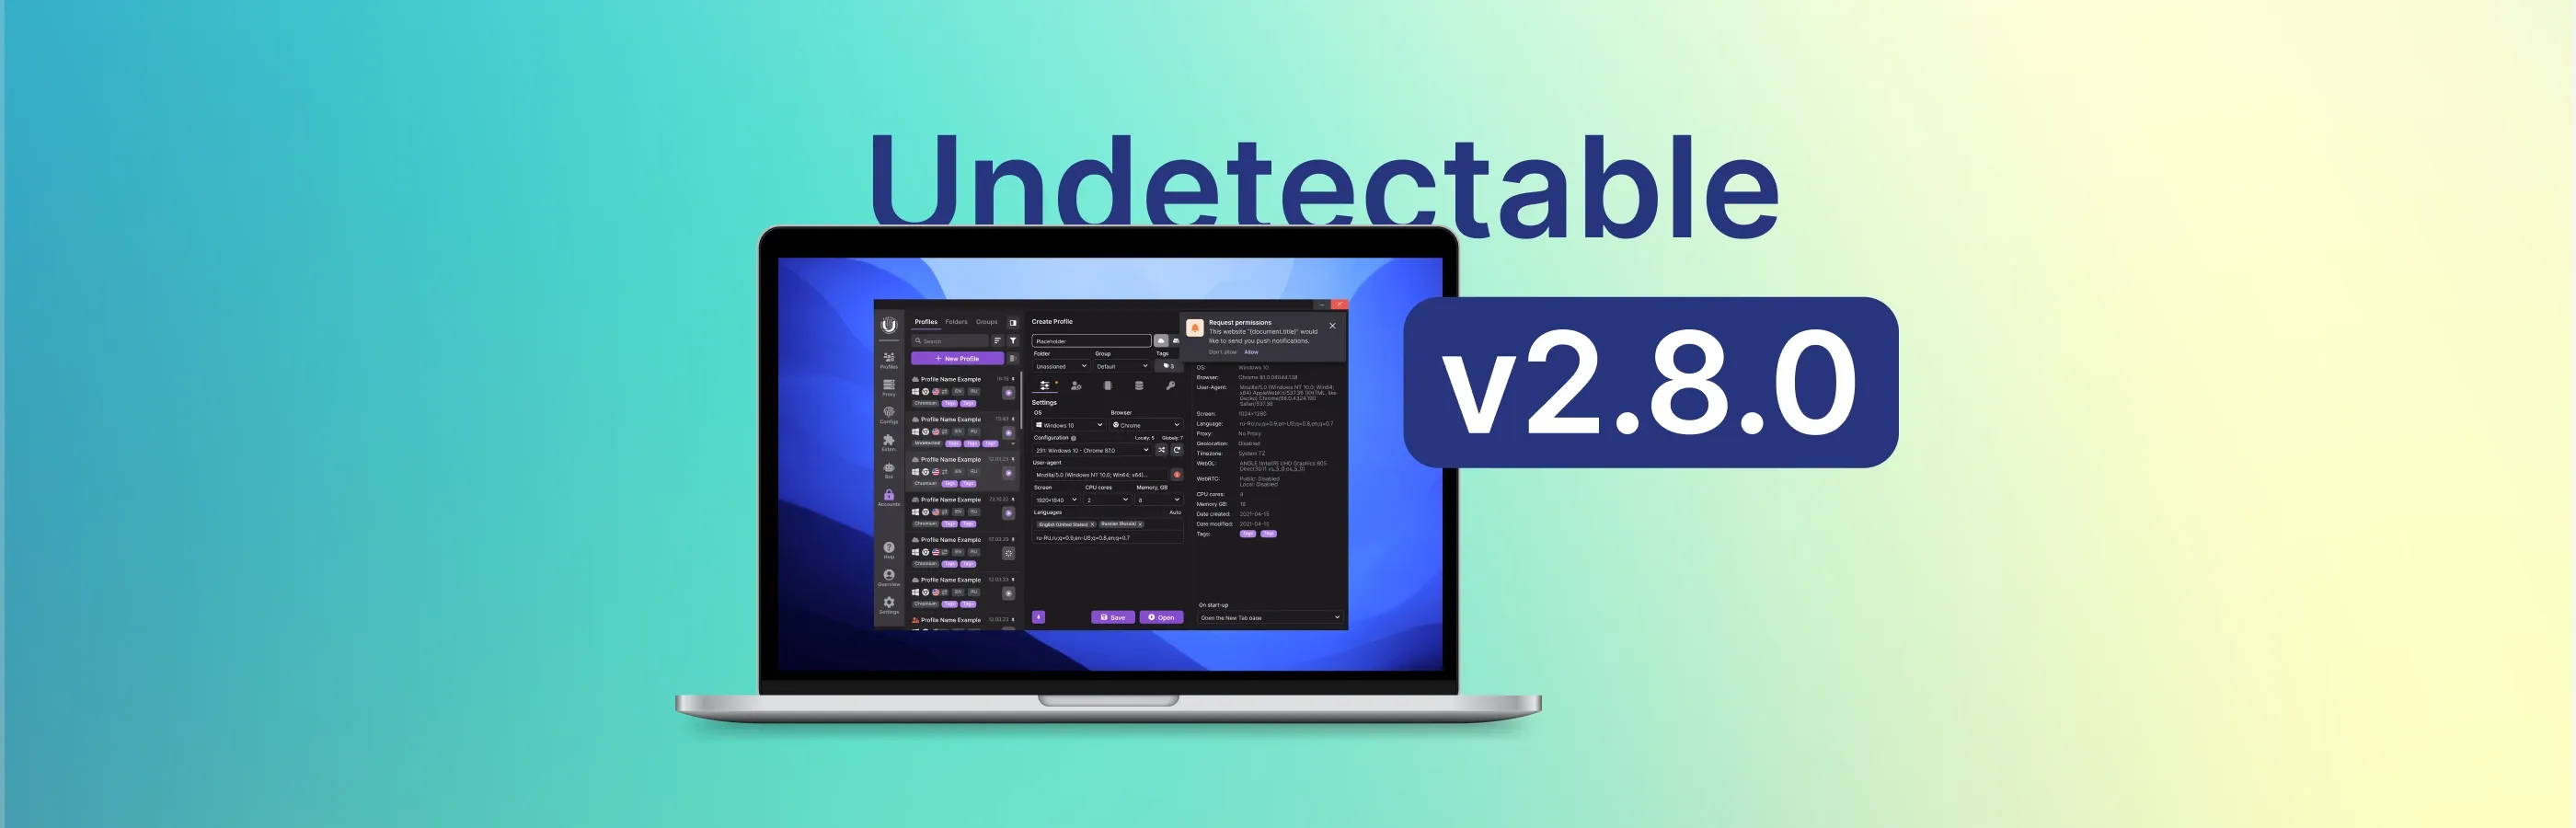 Aktualisierung des Undetectable Browsers 2.8.0: Dunkles Thema und neue Funktionen